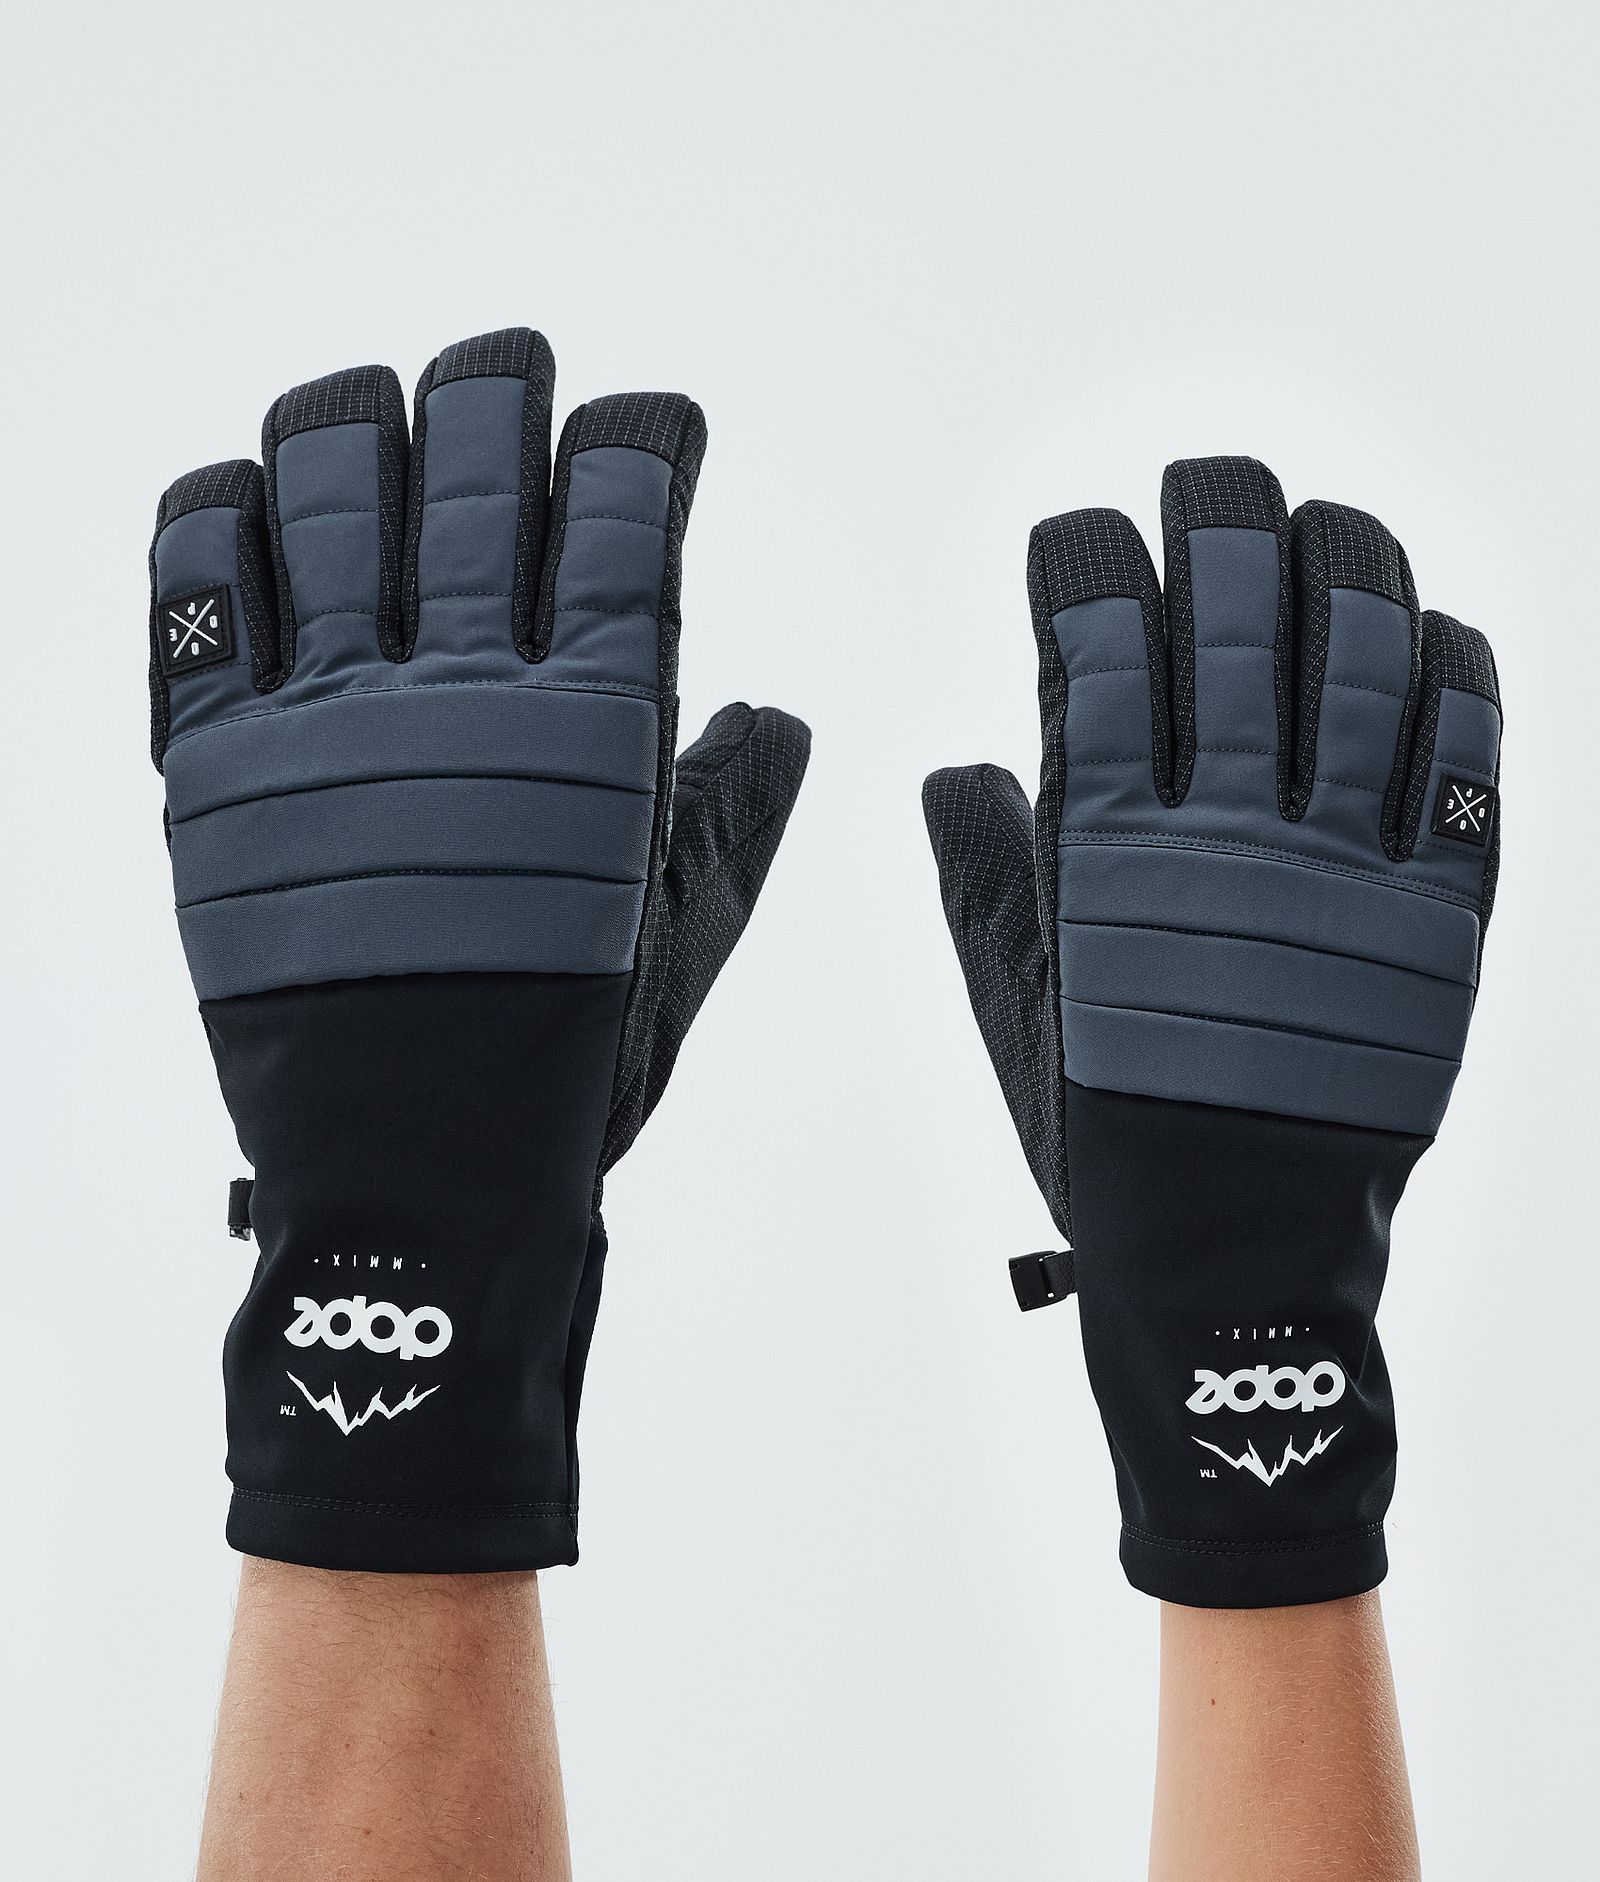 Ace Ski Gloves Metal Blue, Image 1 of 5